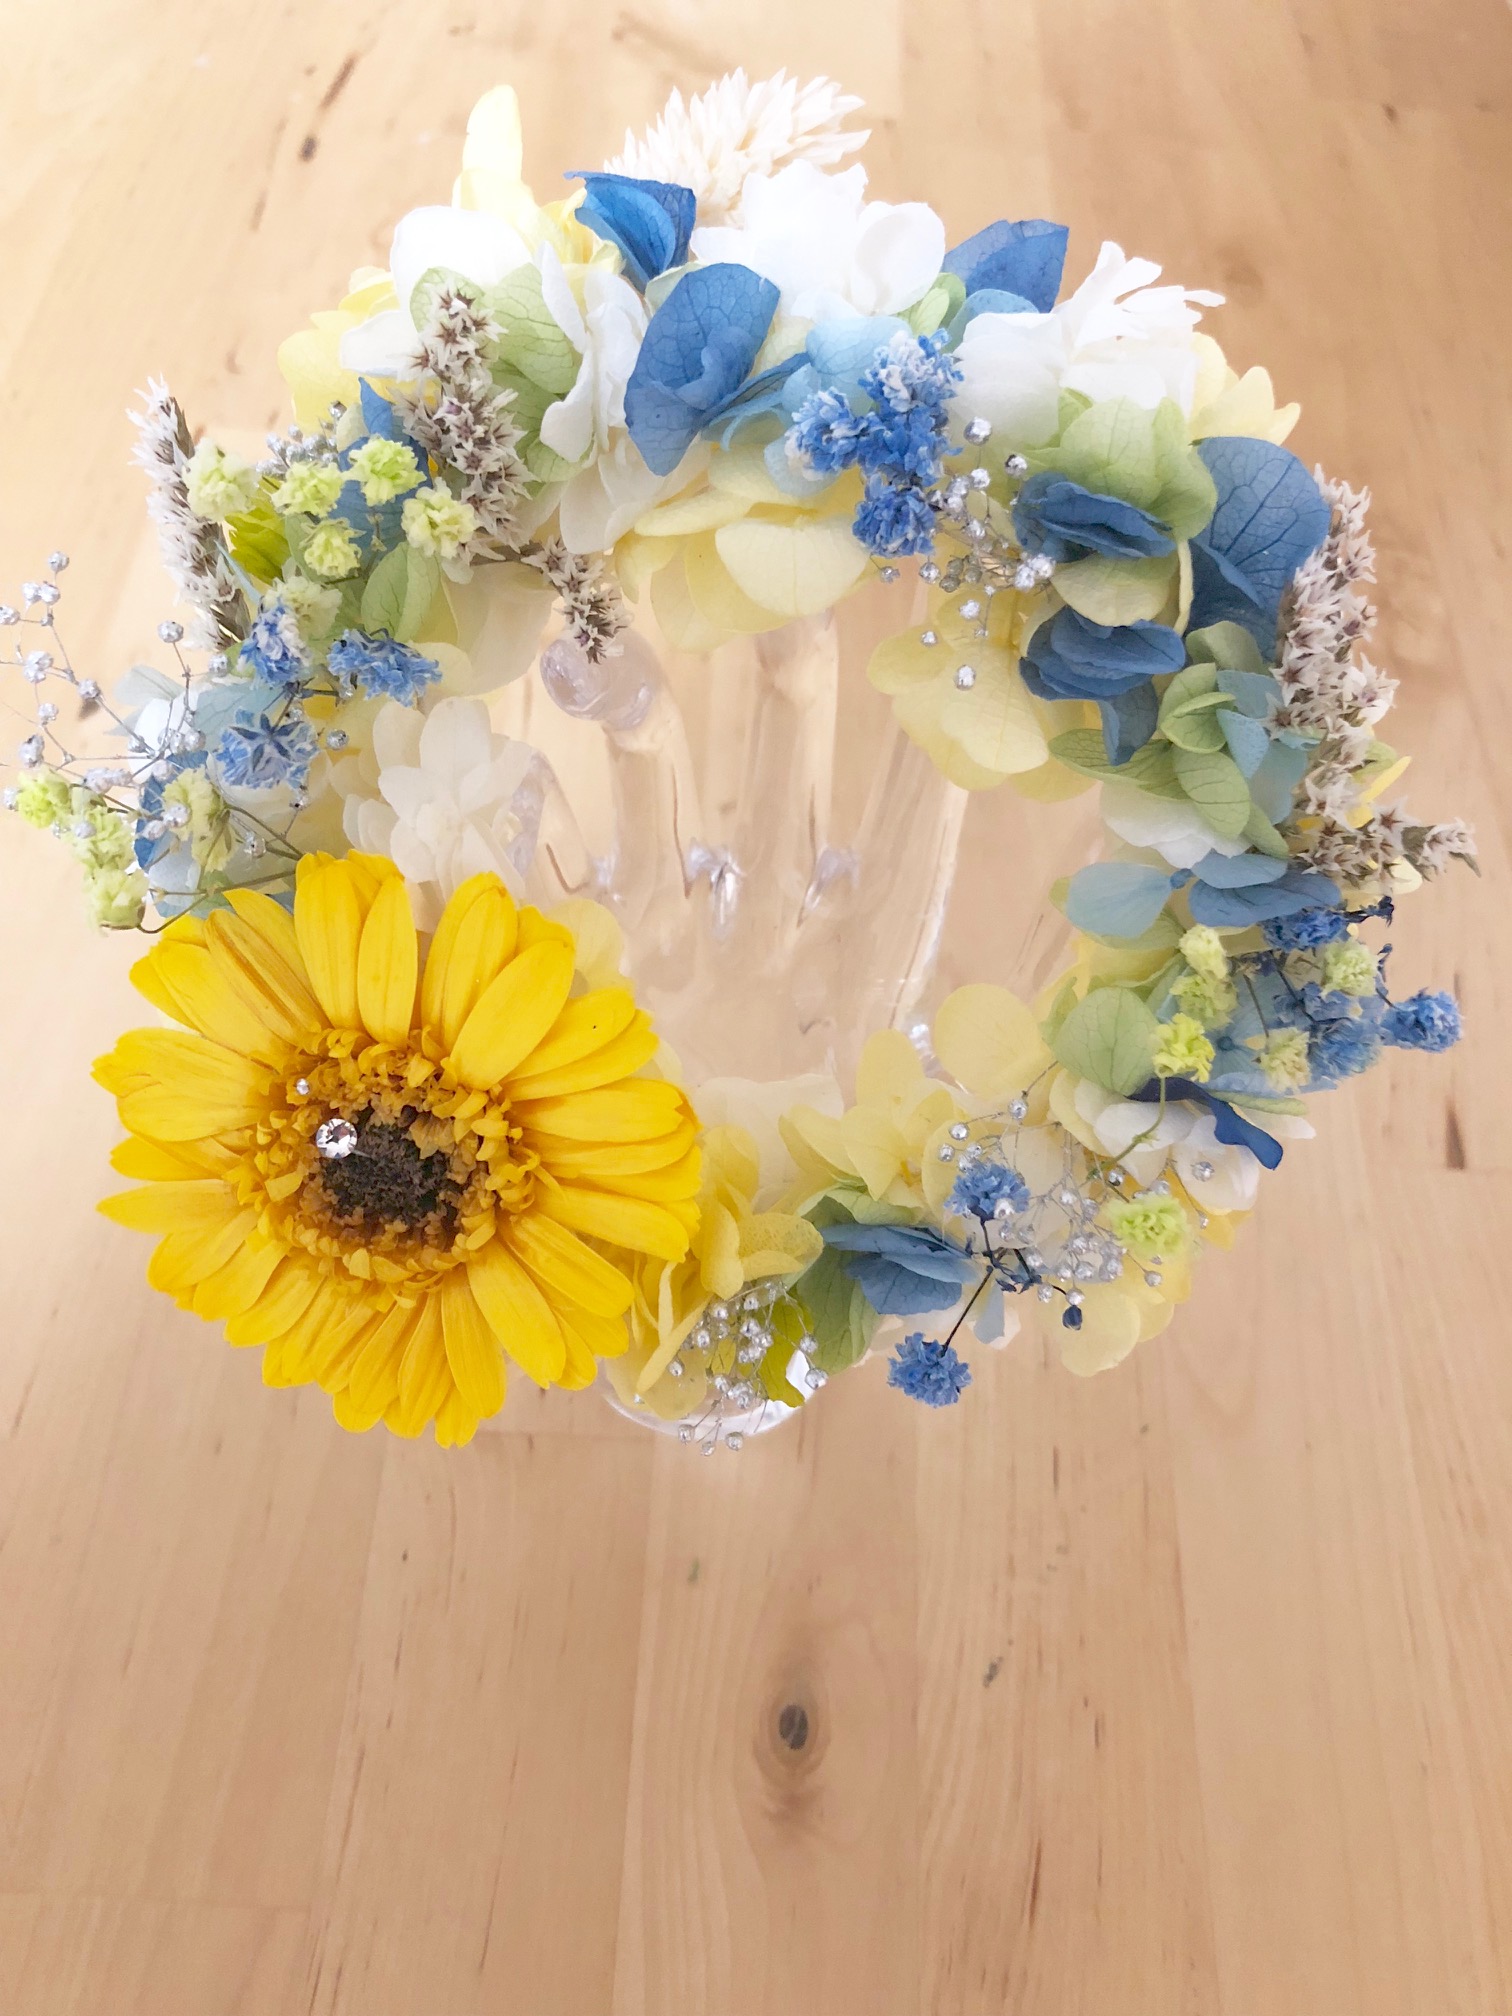 プリザーブドフラワー紫陽花とガーベラのリース花たちの丸い輪の永遠の祝福 Iichi ハンドメイド クラフト作品 手仕事品の通販